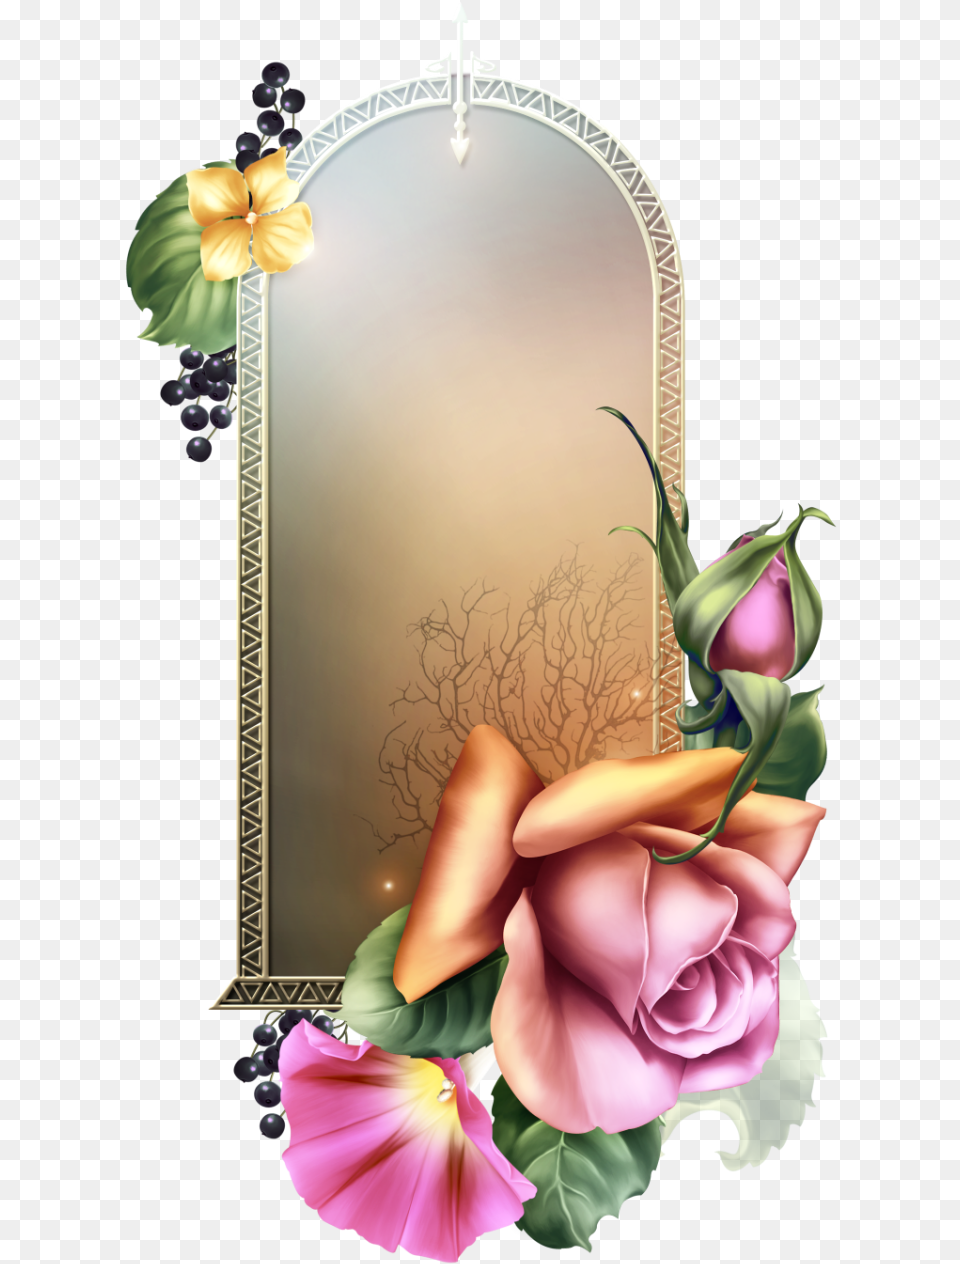 Royal Frame, Rose, Plant, Flower, Petal Png Image